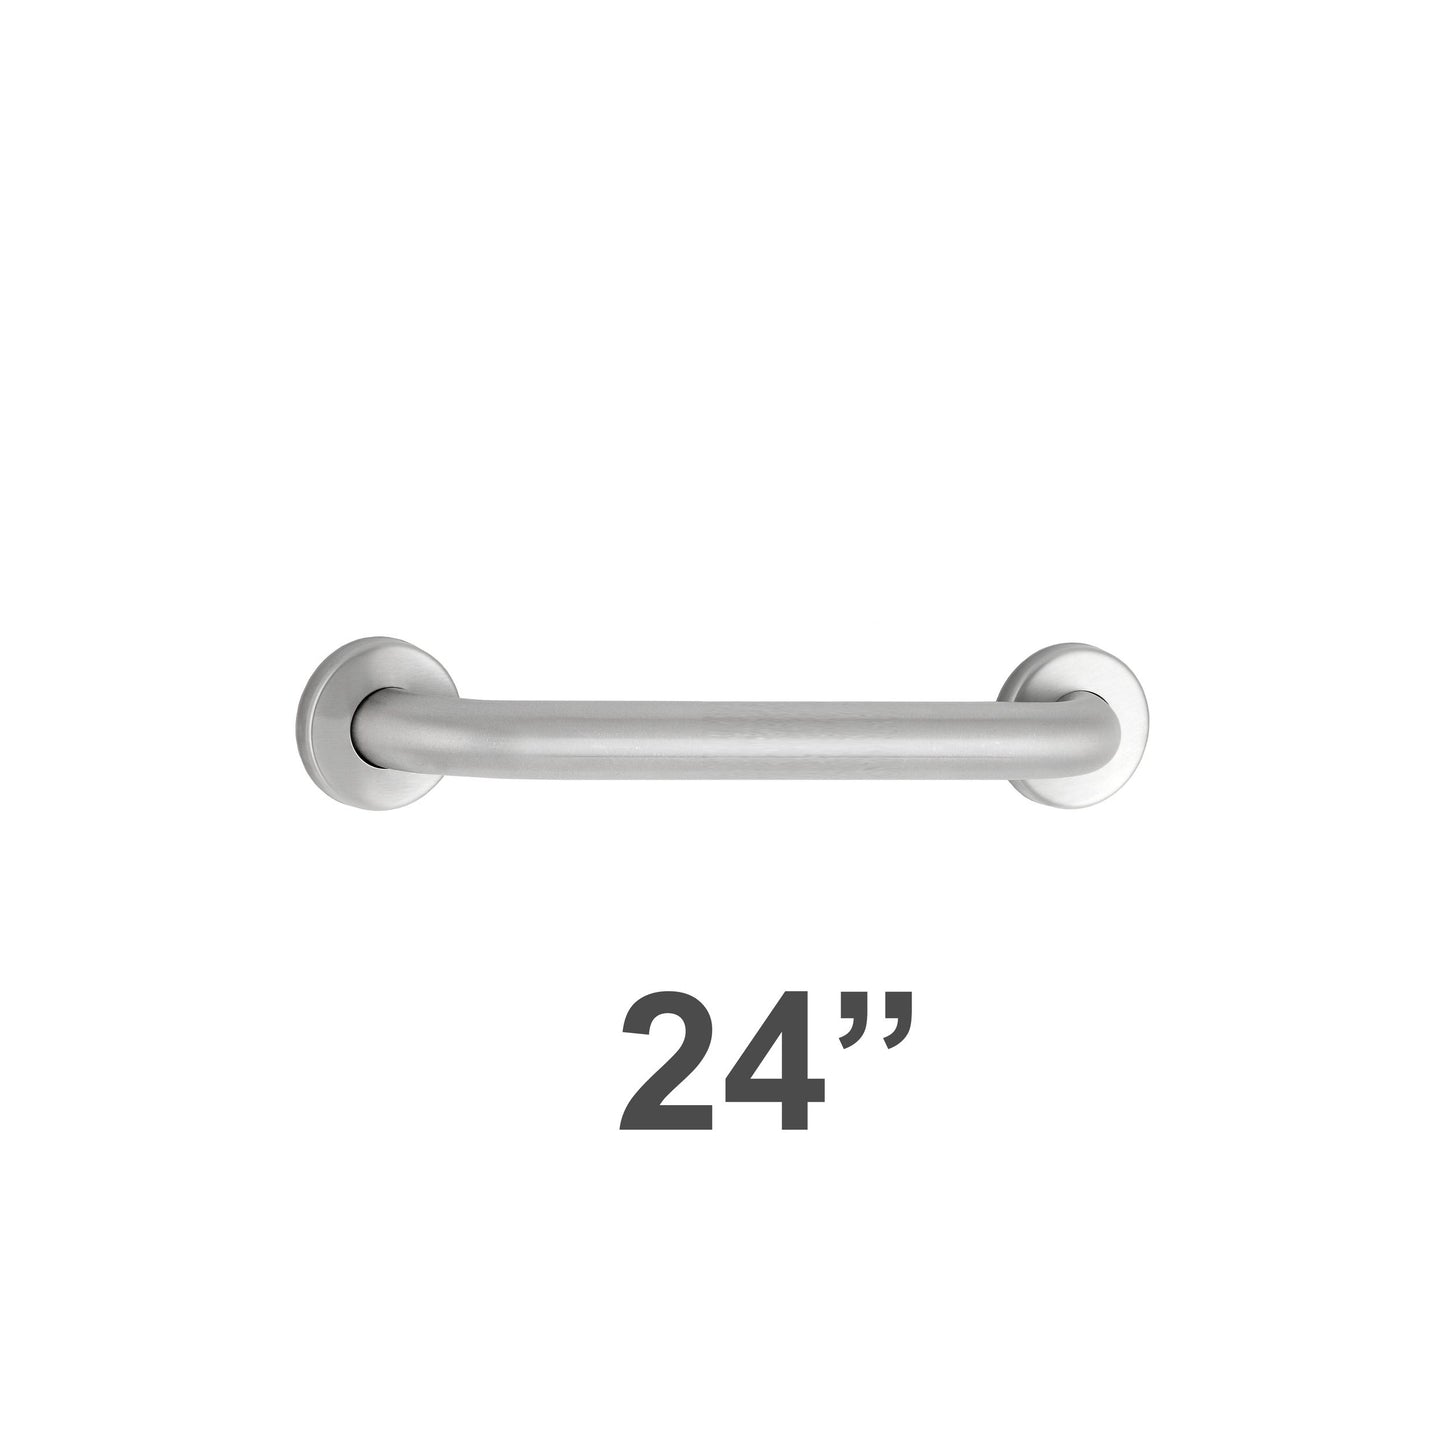 Bobrick 5806x24 - 1-1/4" Diameter 24" Length Straight Grab Bar in Satin Stainless Steel